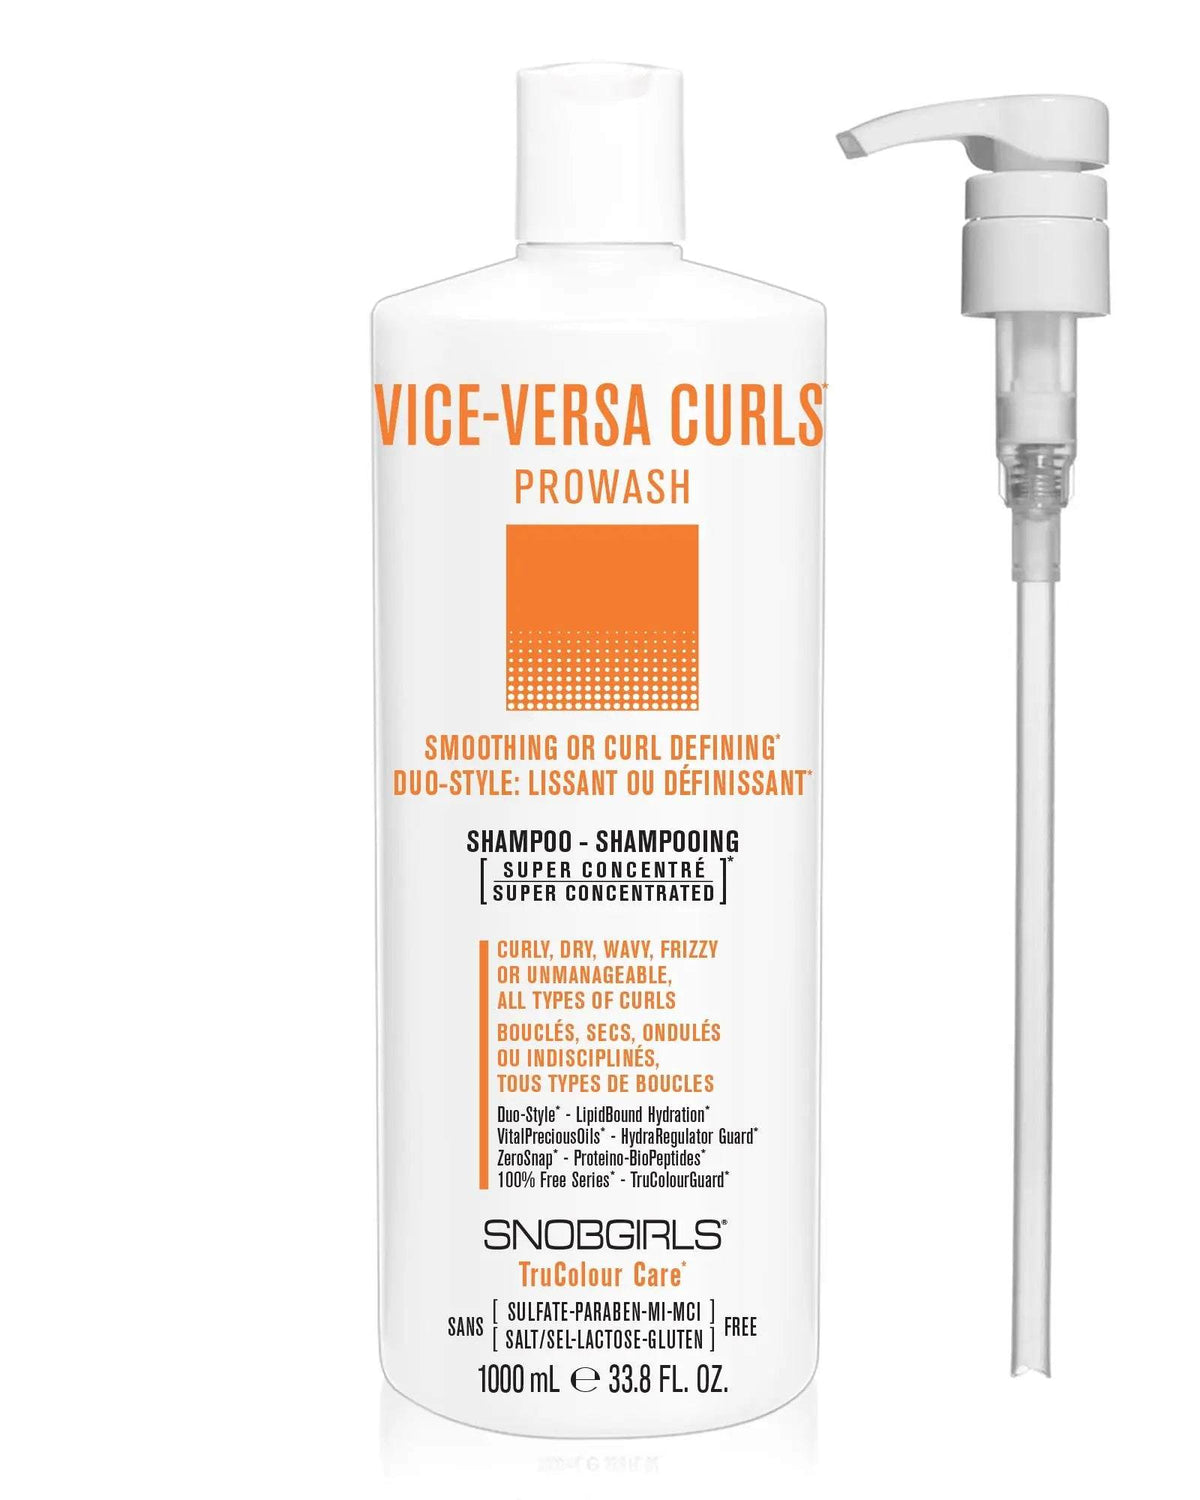 VICE-VERSA CURLS Prowash Vegan Hair Shampoo &amp; Pump SNOBGIRLS